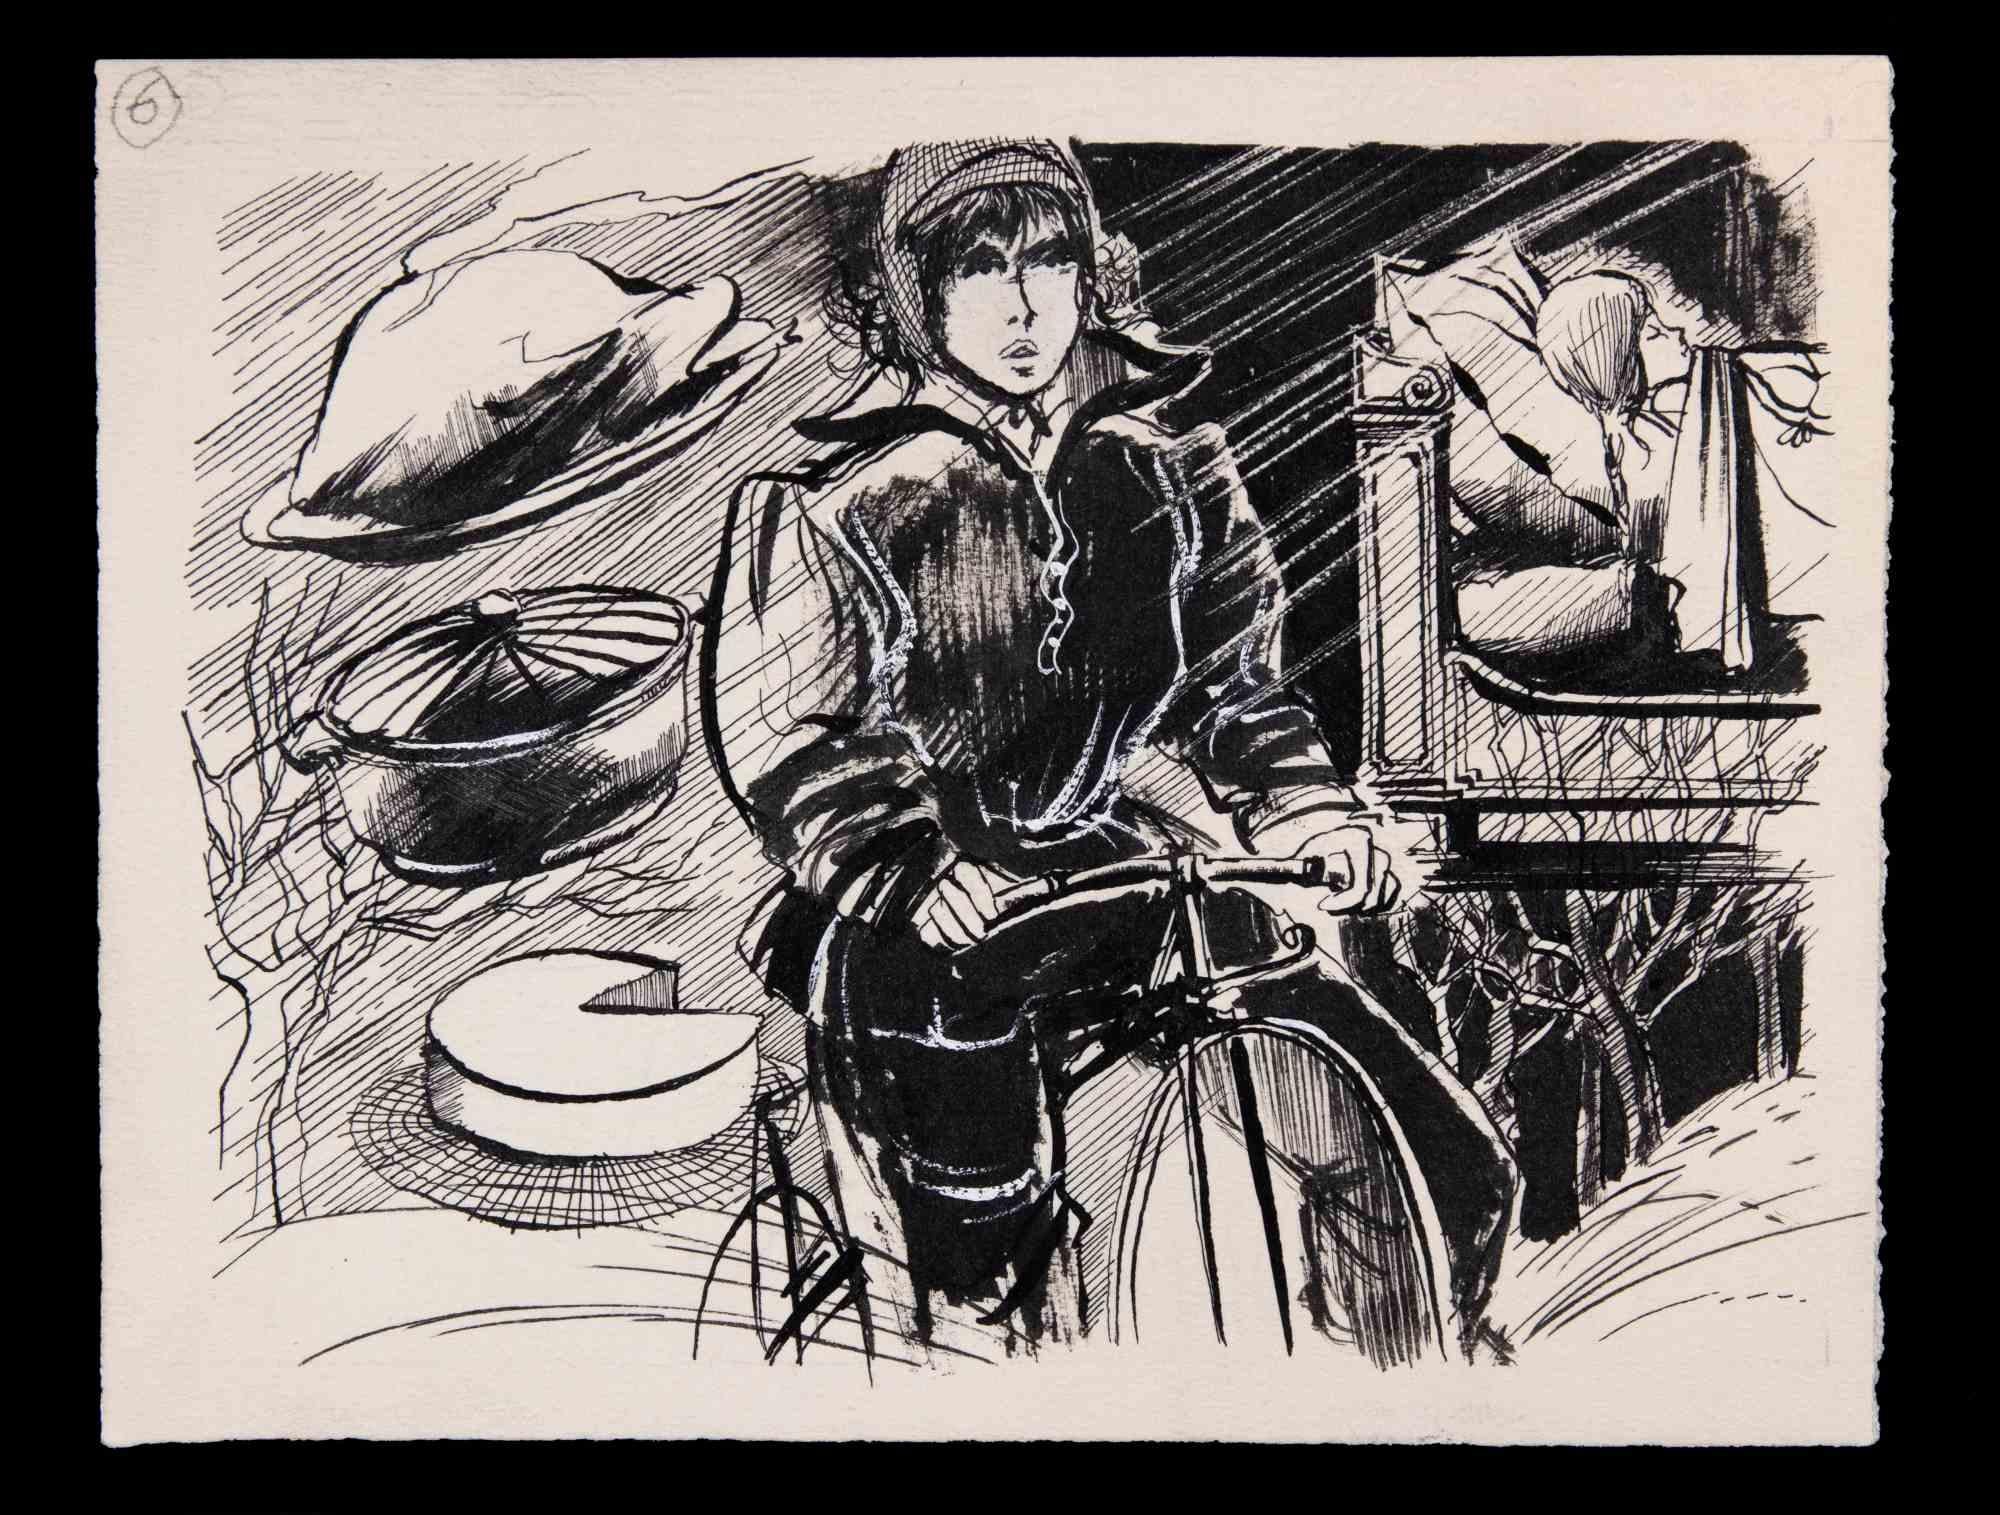 Fahrradfrau – Zeichnung von Norbert Meyre – Mitte des 20. Jahrhunderts